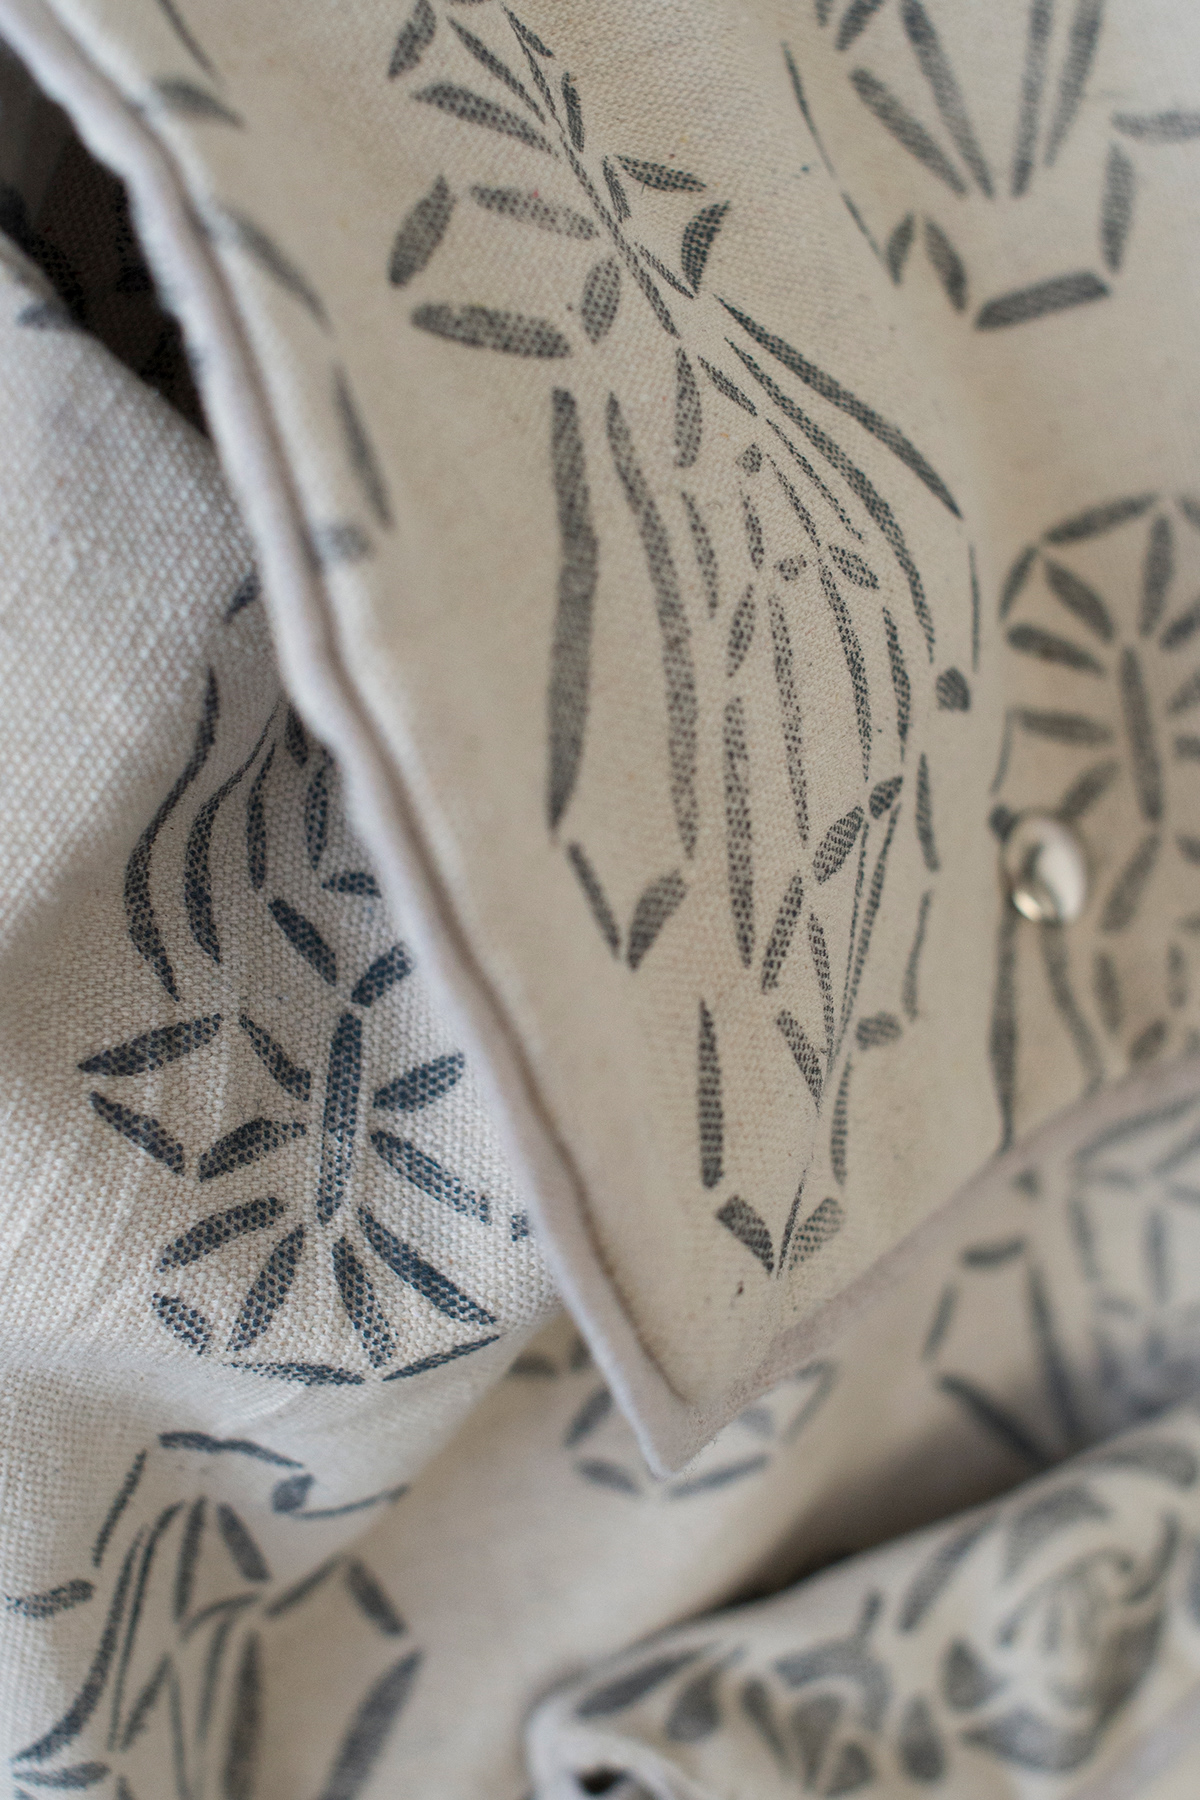 backpack floral pattern Wearable printmaking handmade